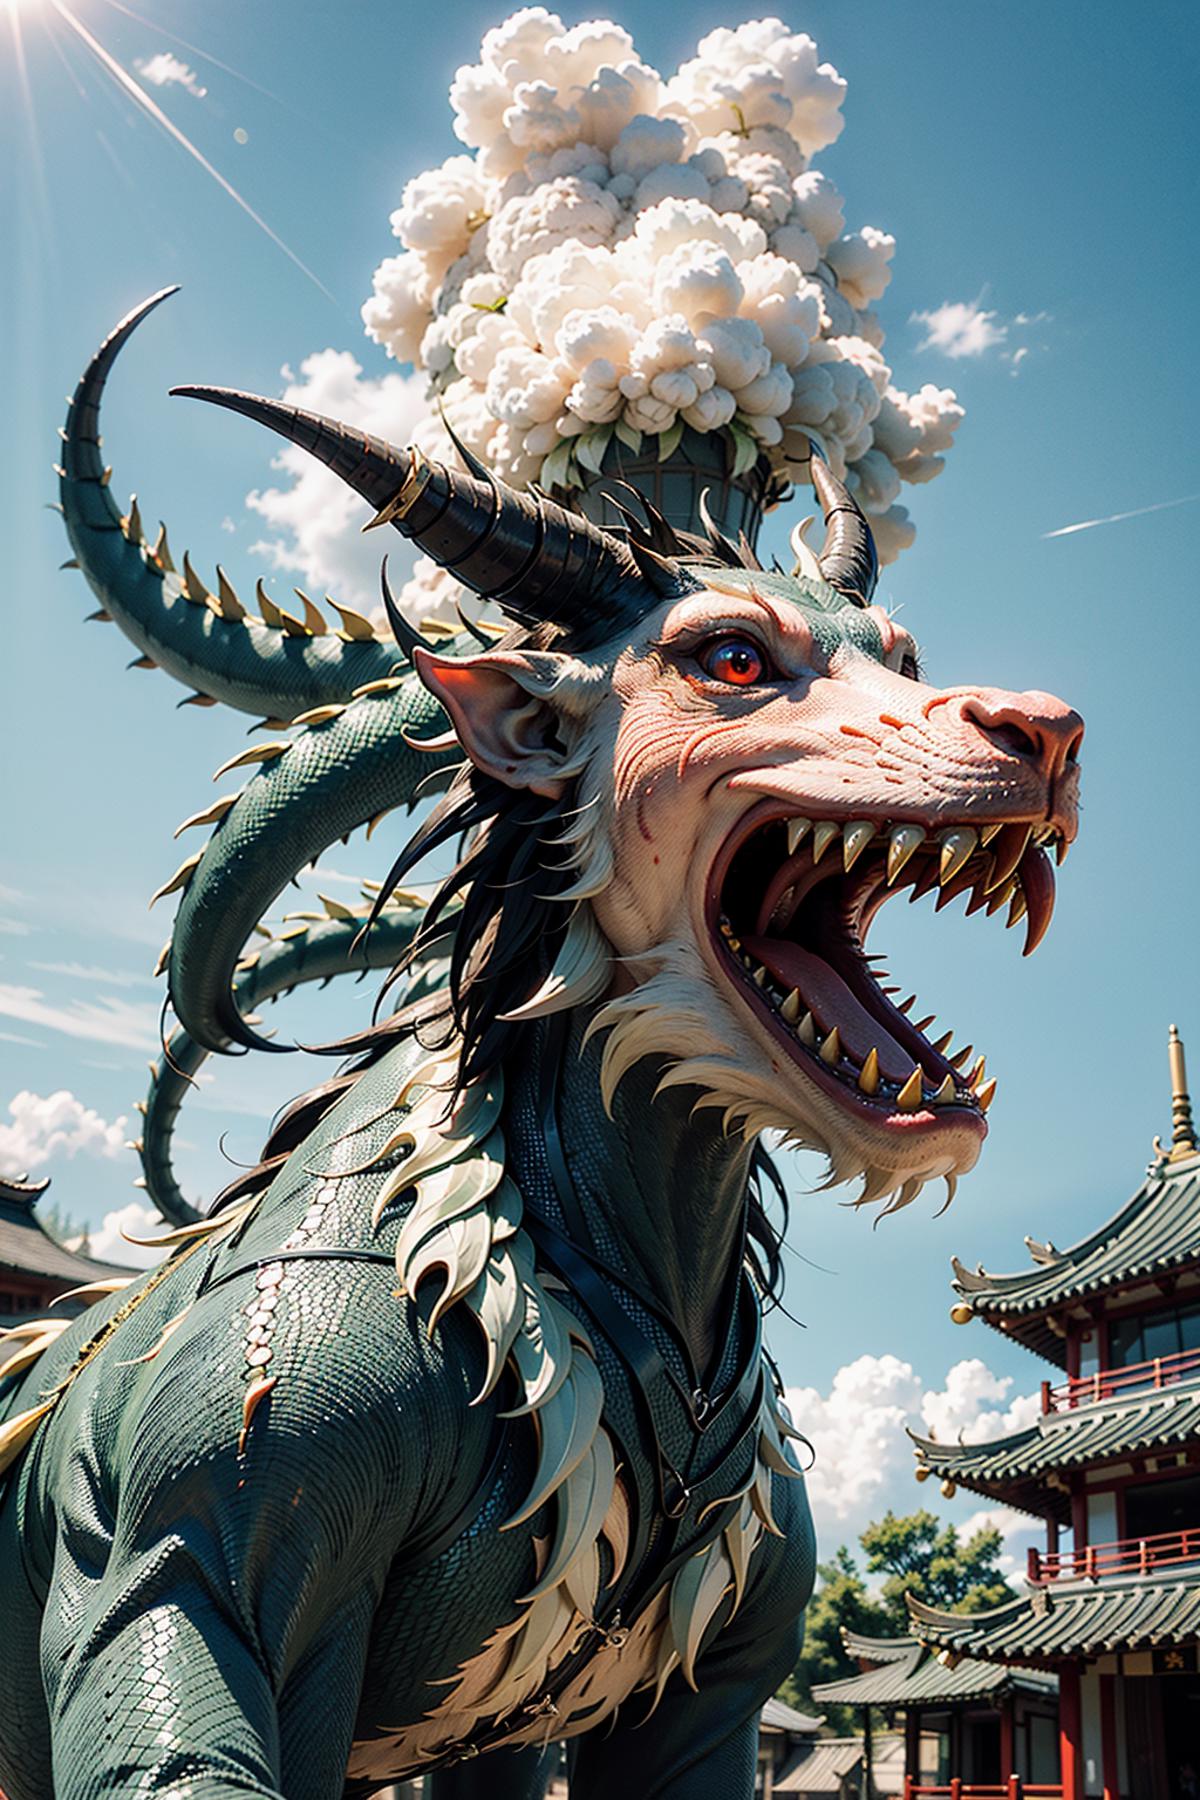 东方巨龙 Oriental giant dragon image by Shivae